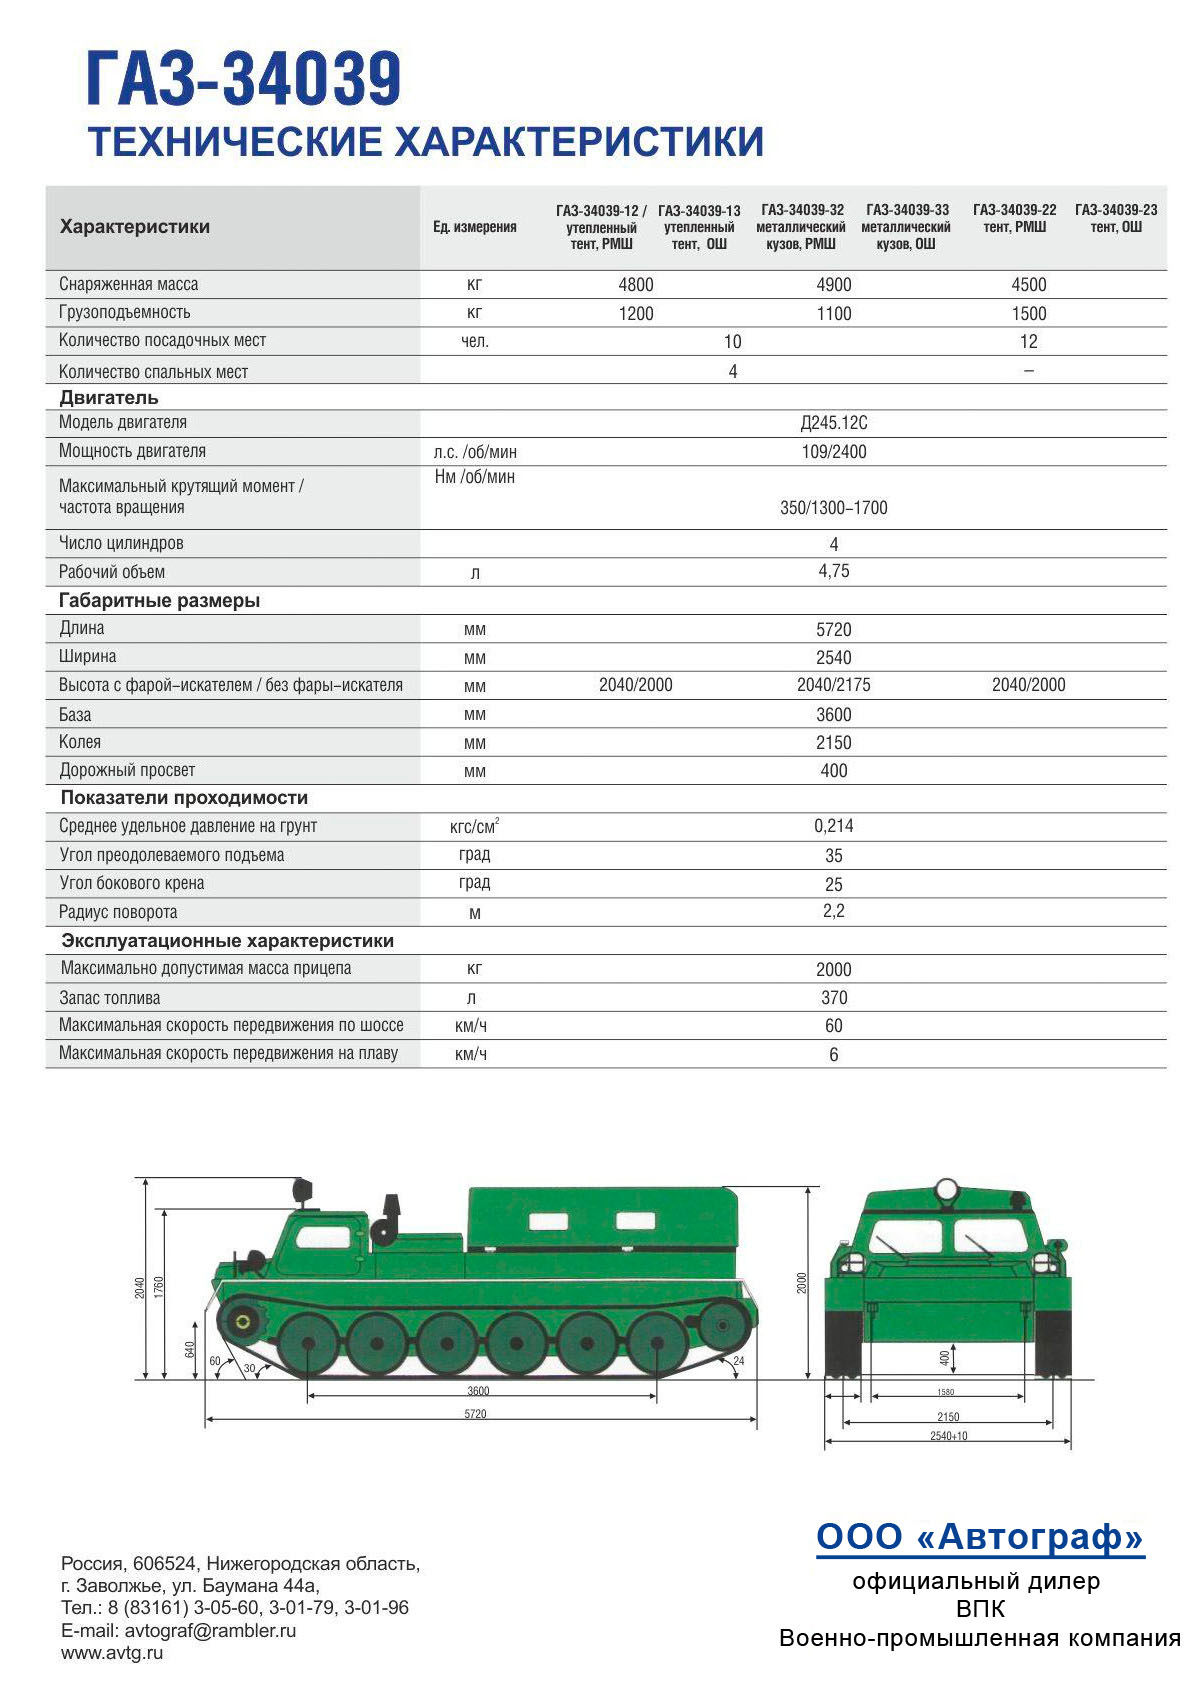 Газ-47 – первый советский вездеход на гусеничном ходу